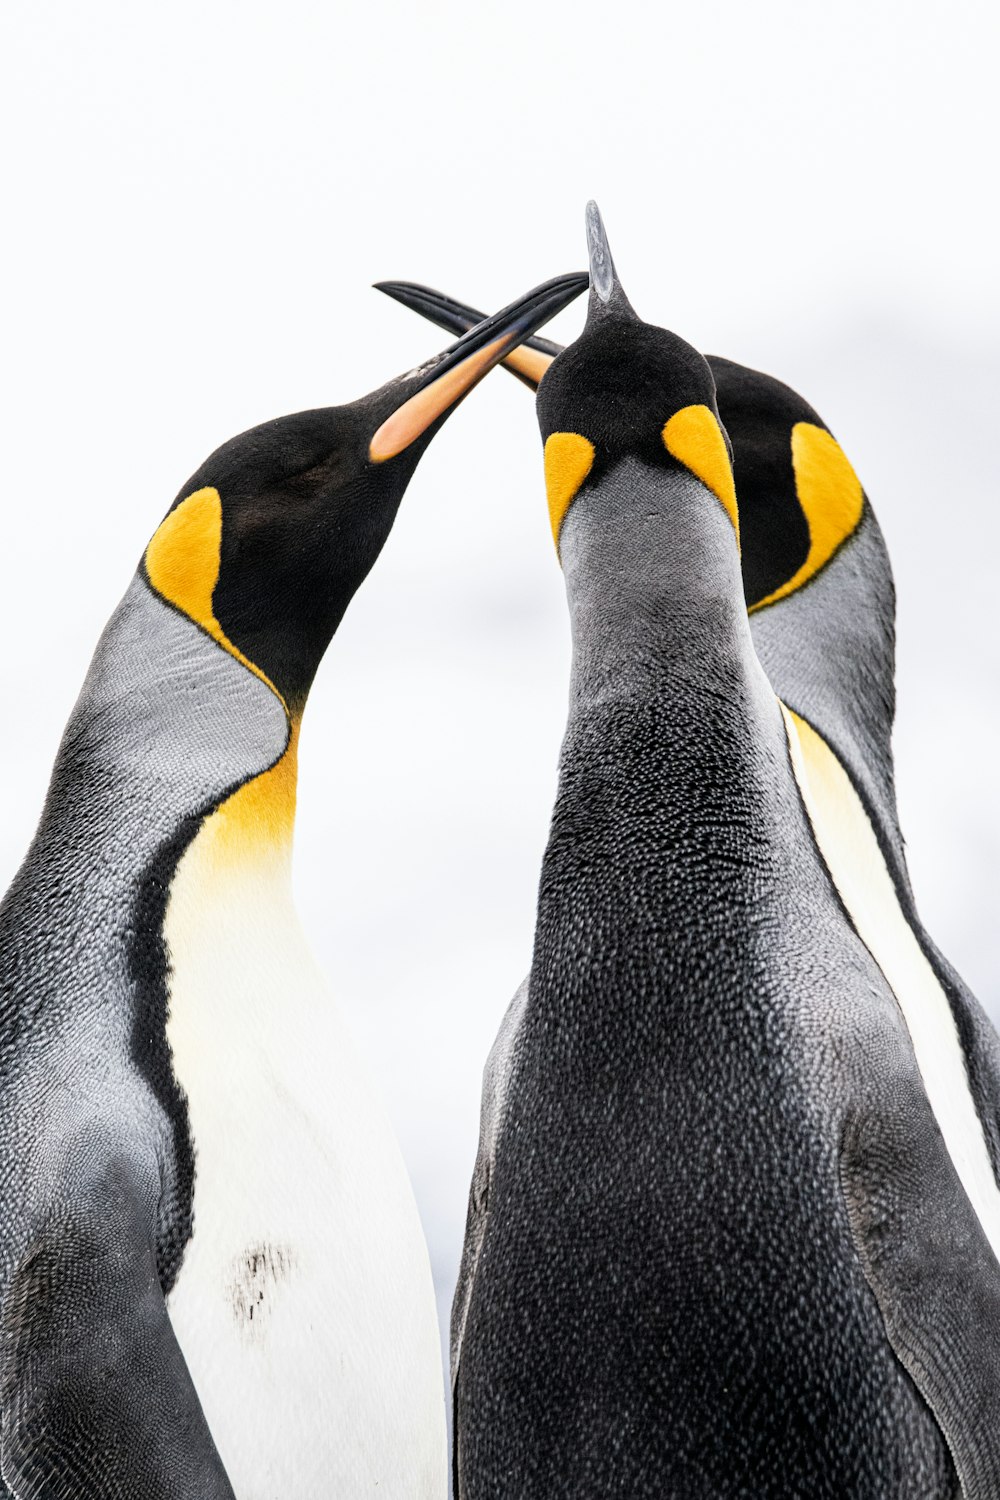 Una coppia di pinguini in piedi uno accanto all'altro